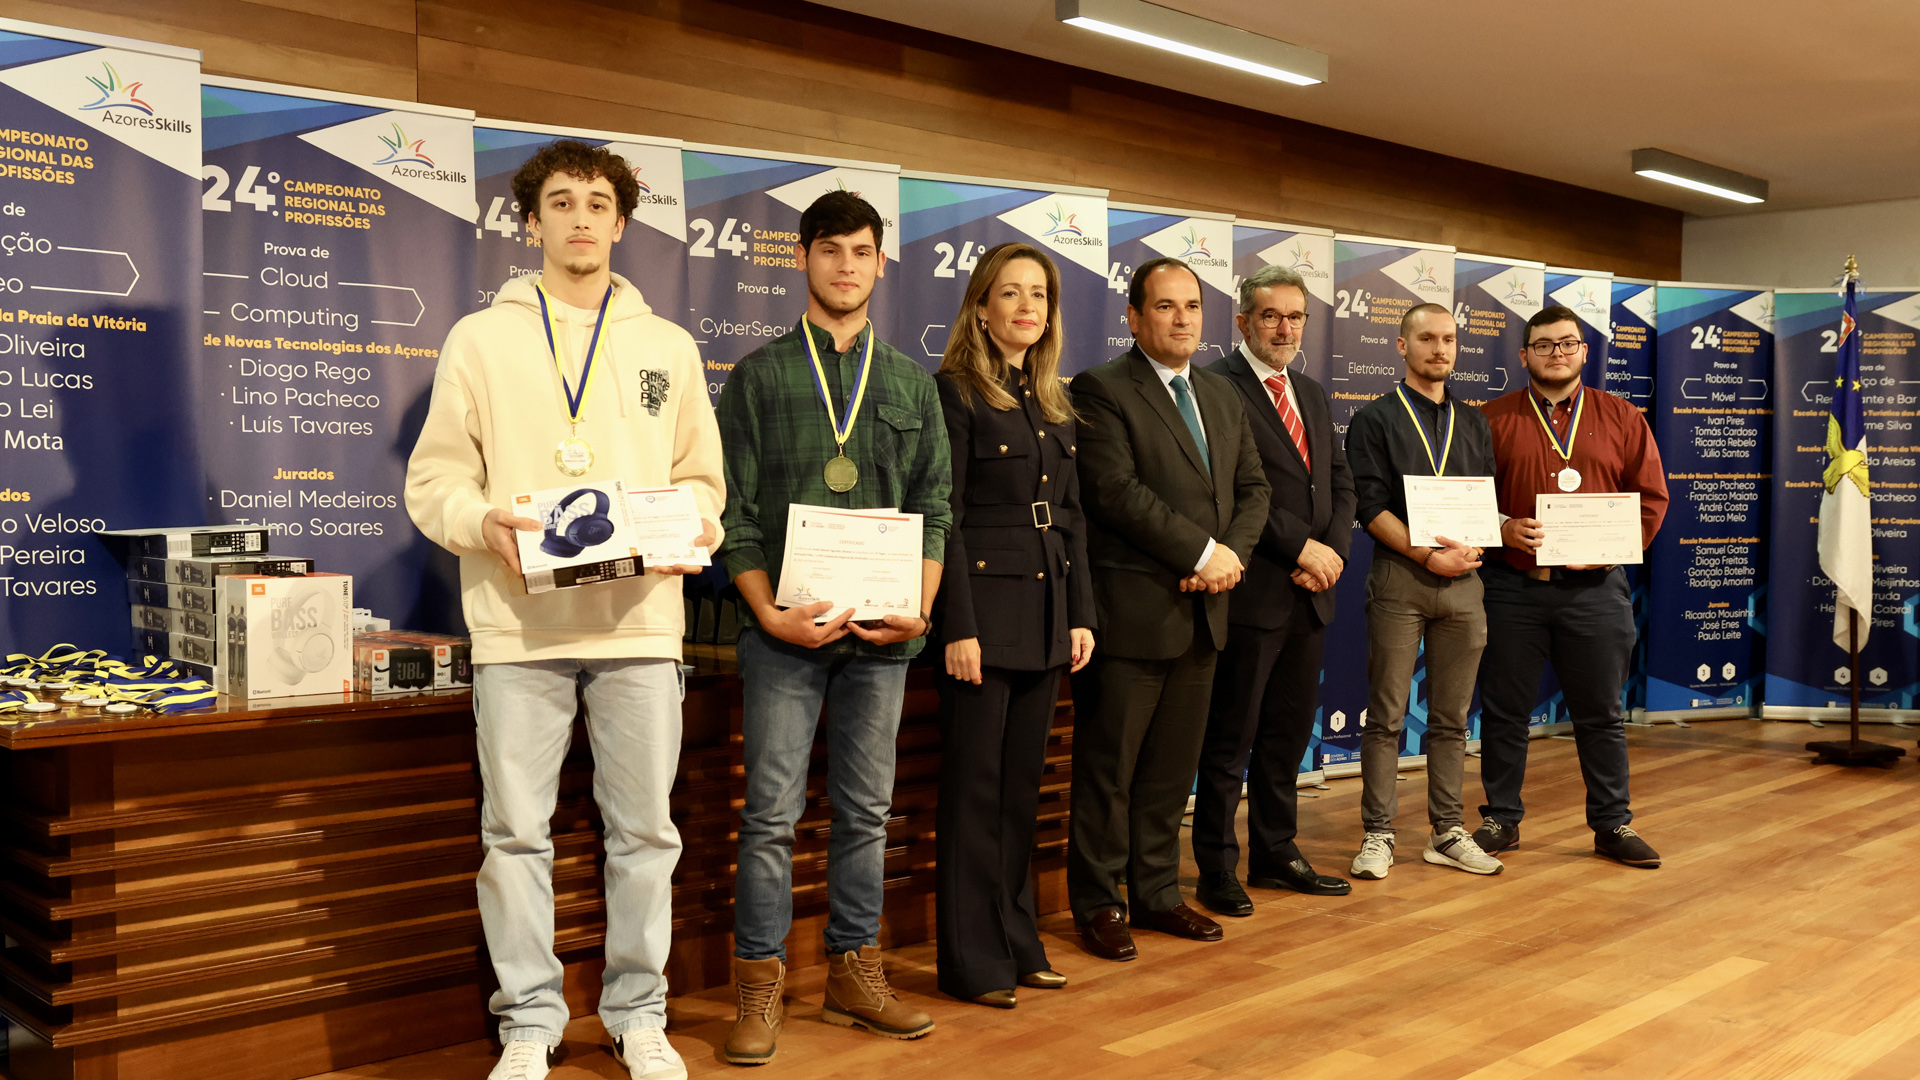 Ensino Profissional dos Açores vai ao Campeonato Nacional das Profissões com 14 medalhas de ouro